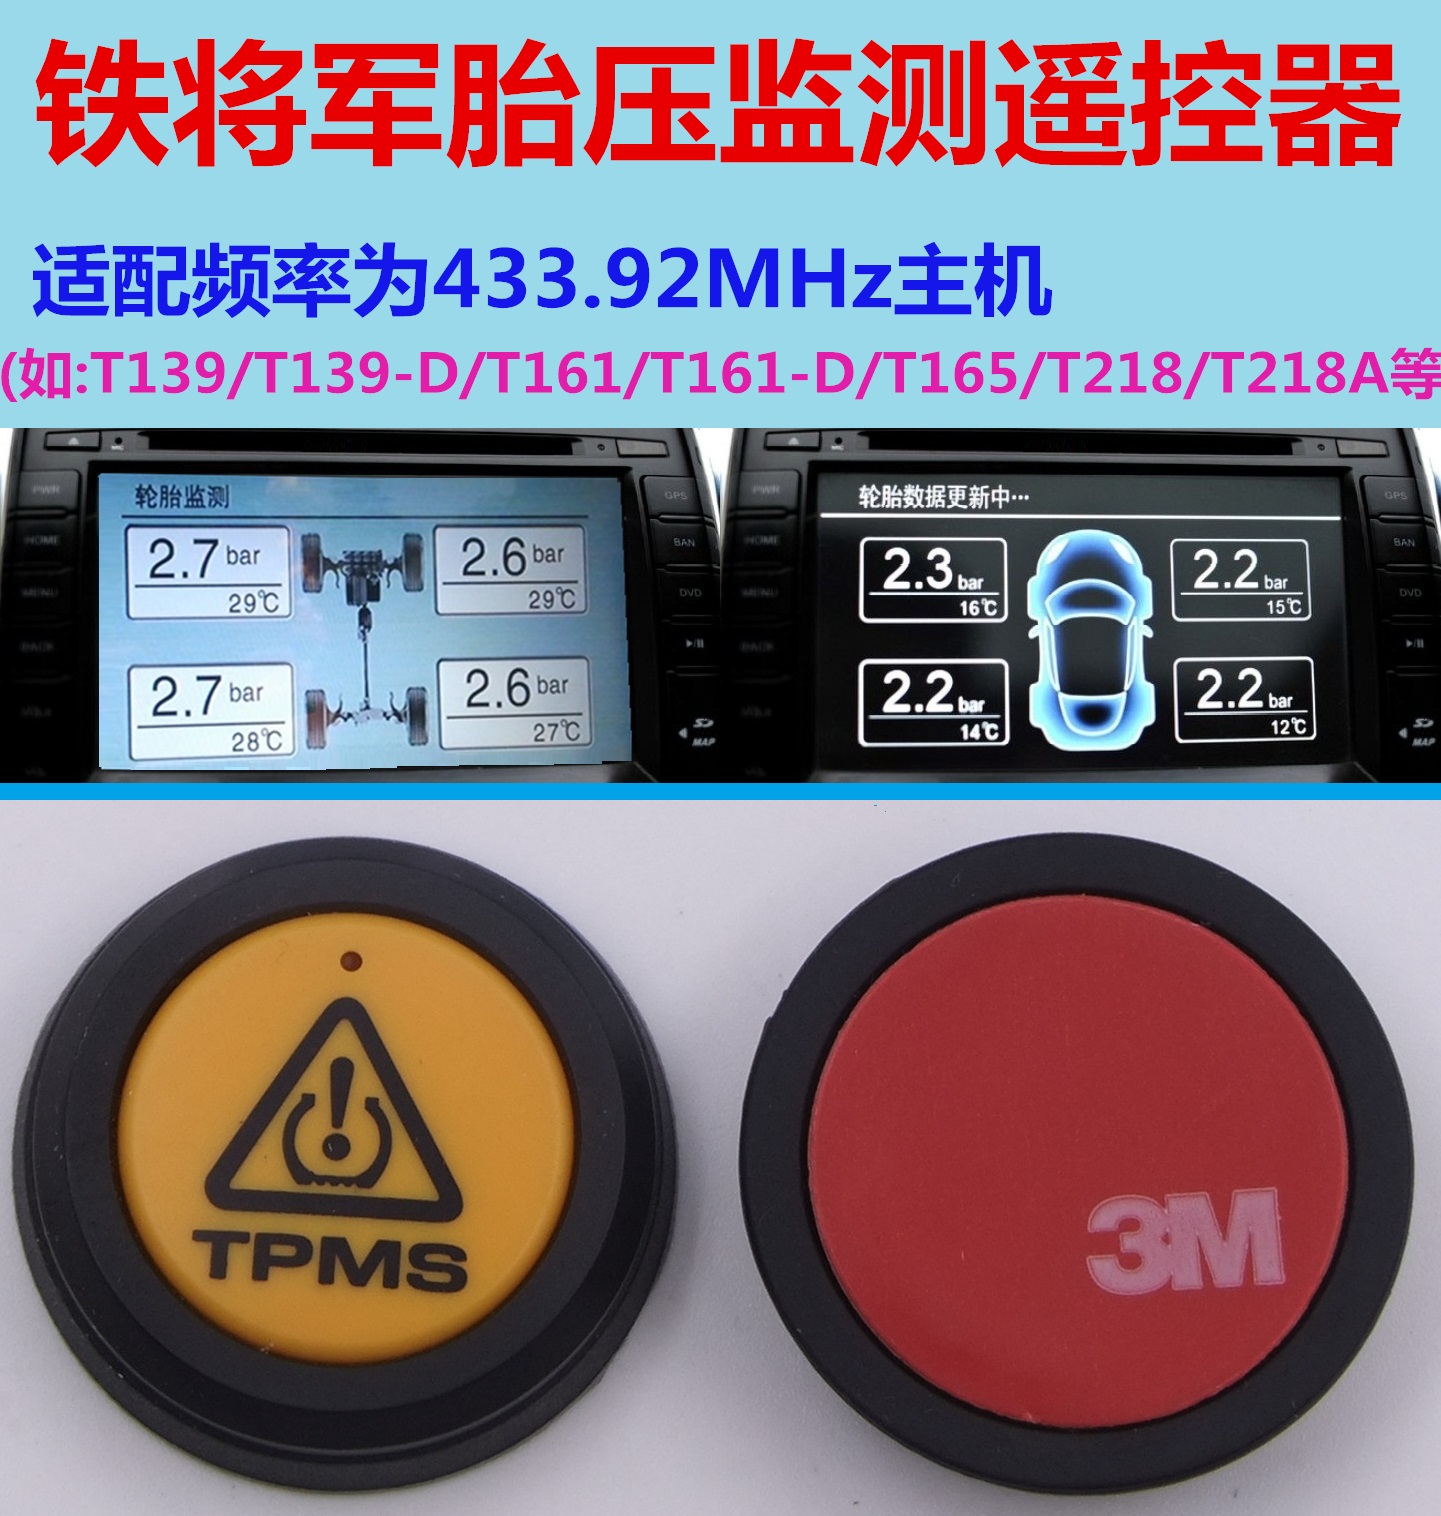 铁将军胎压监测遥控按钮适用于T139T161T165T218T123胎压监测